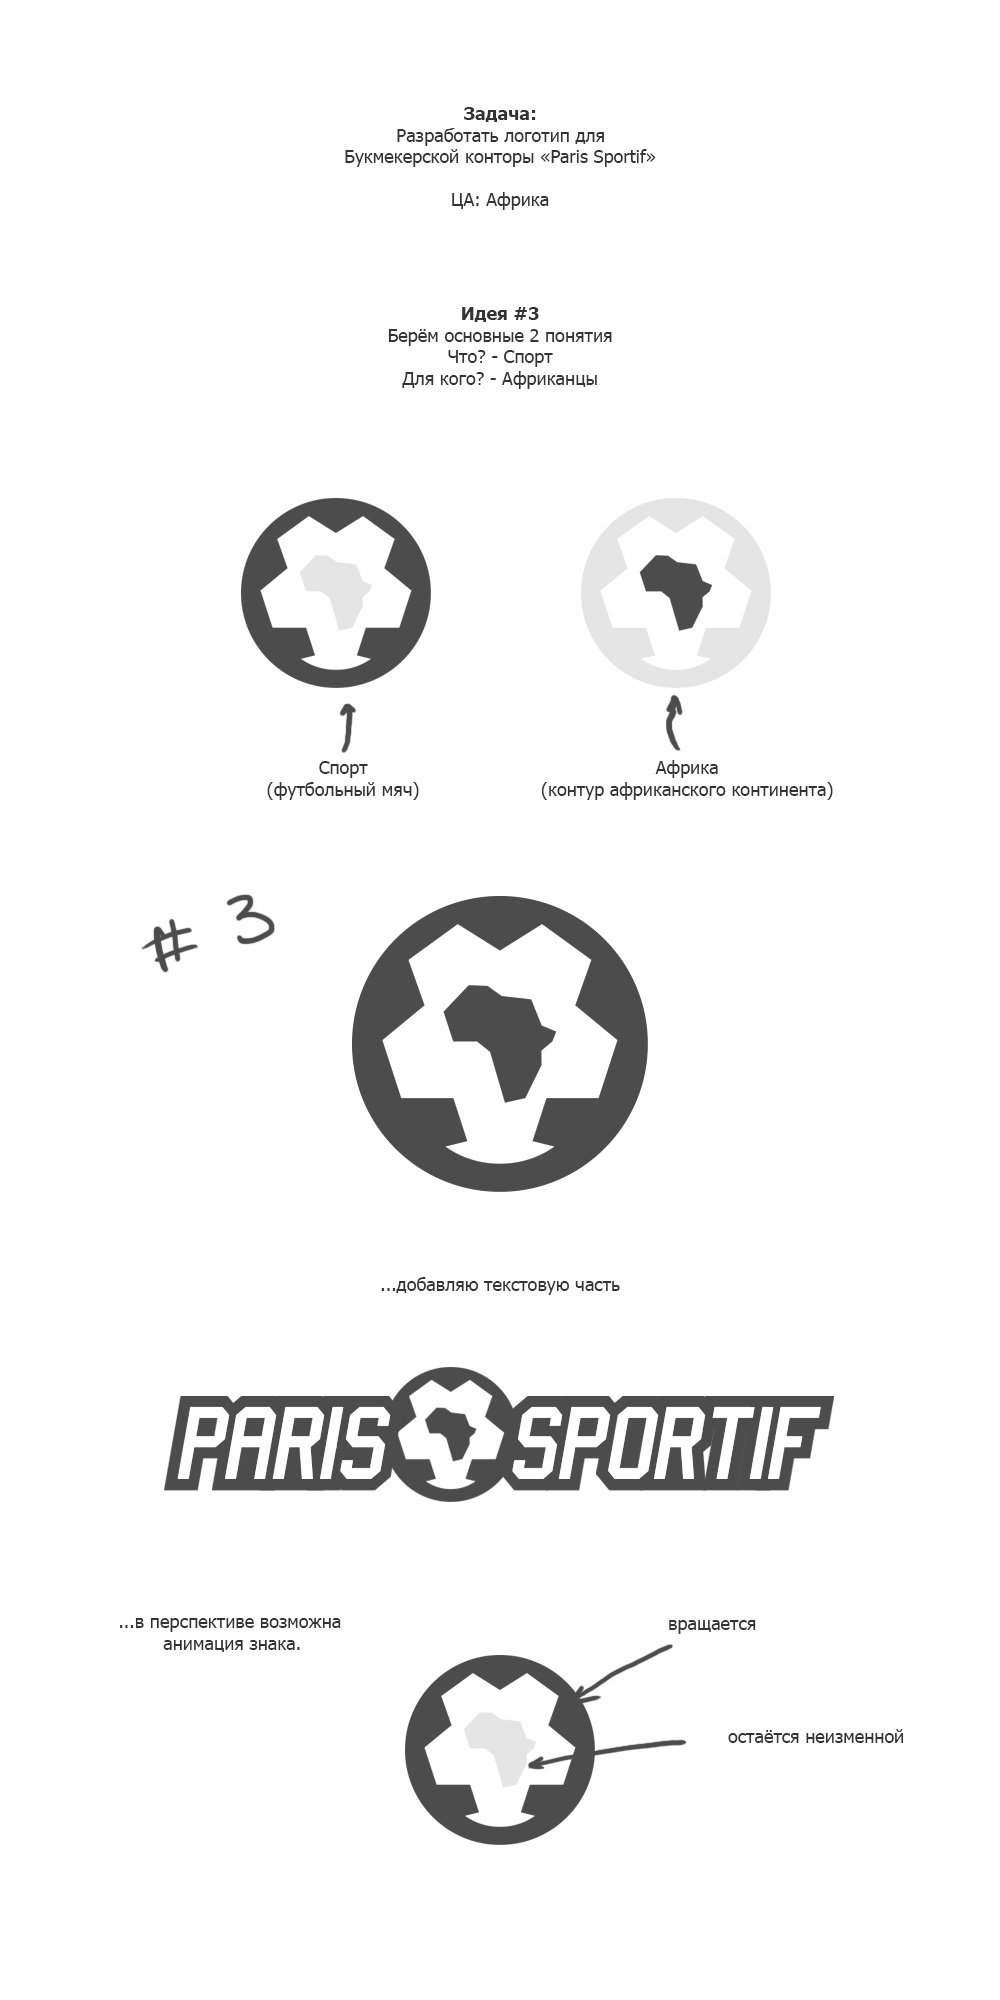 Paris Sportif logo 3